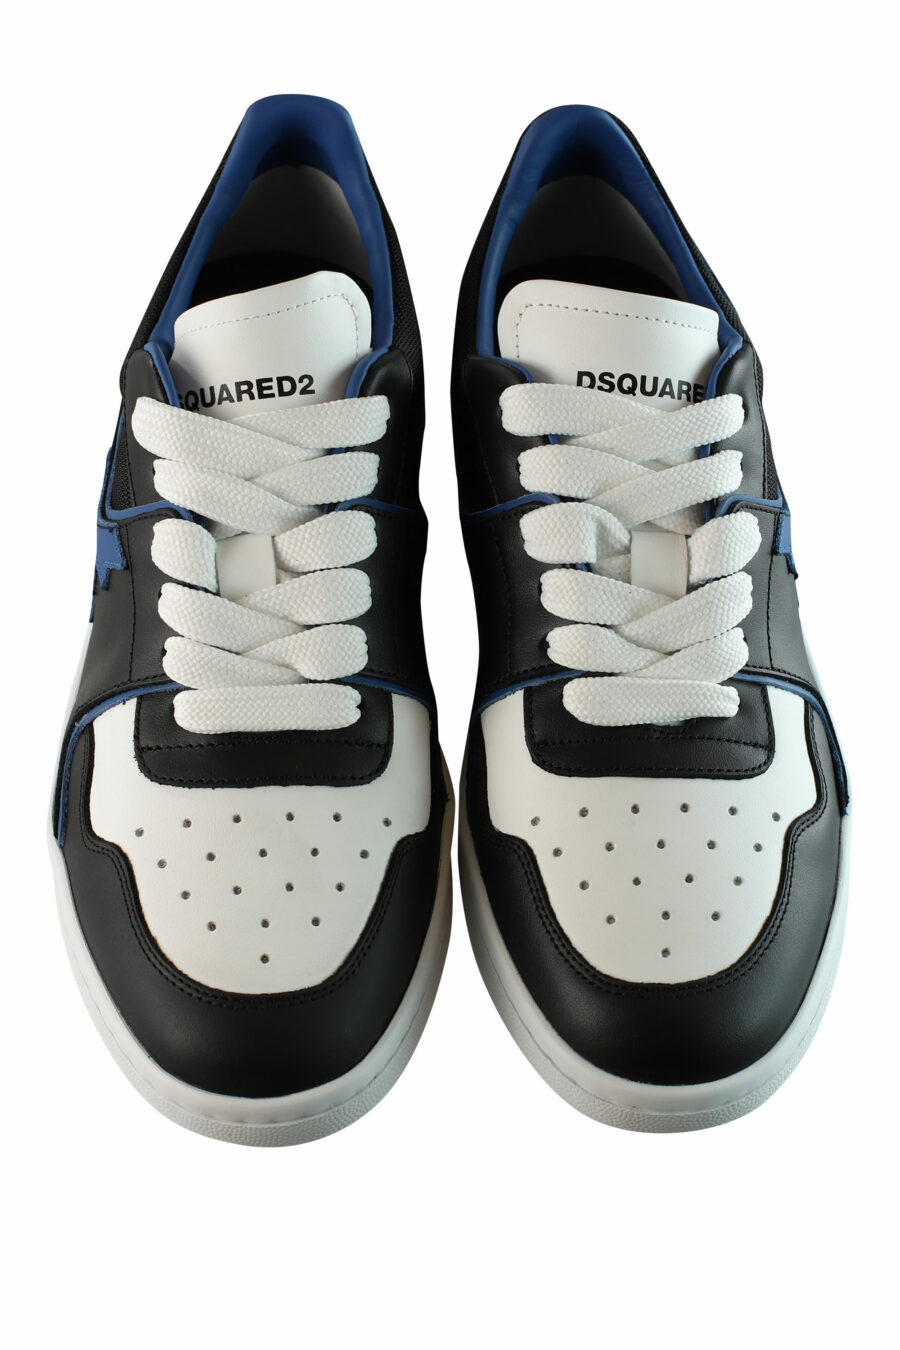 Zapatillas bicolor negras y azules "boxer" con detalles en blanco - IMG 1539